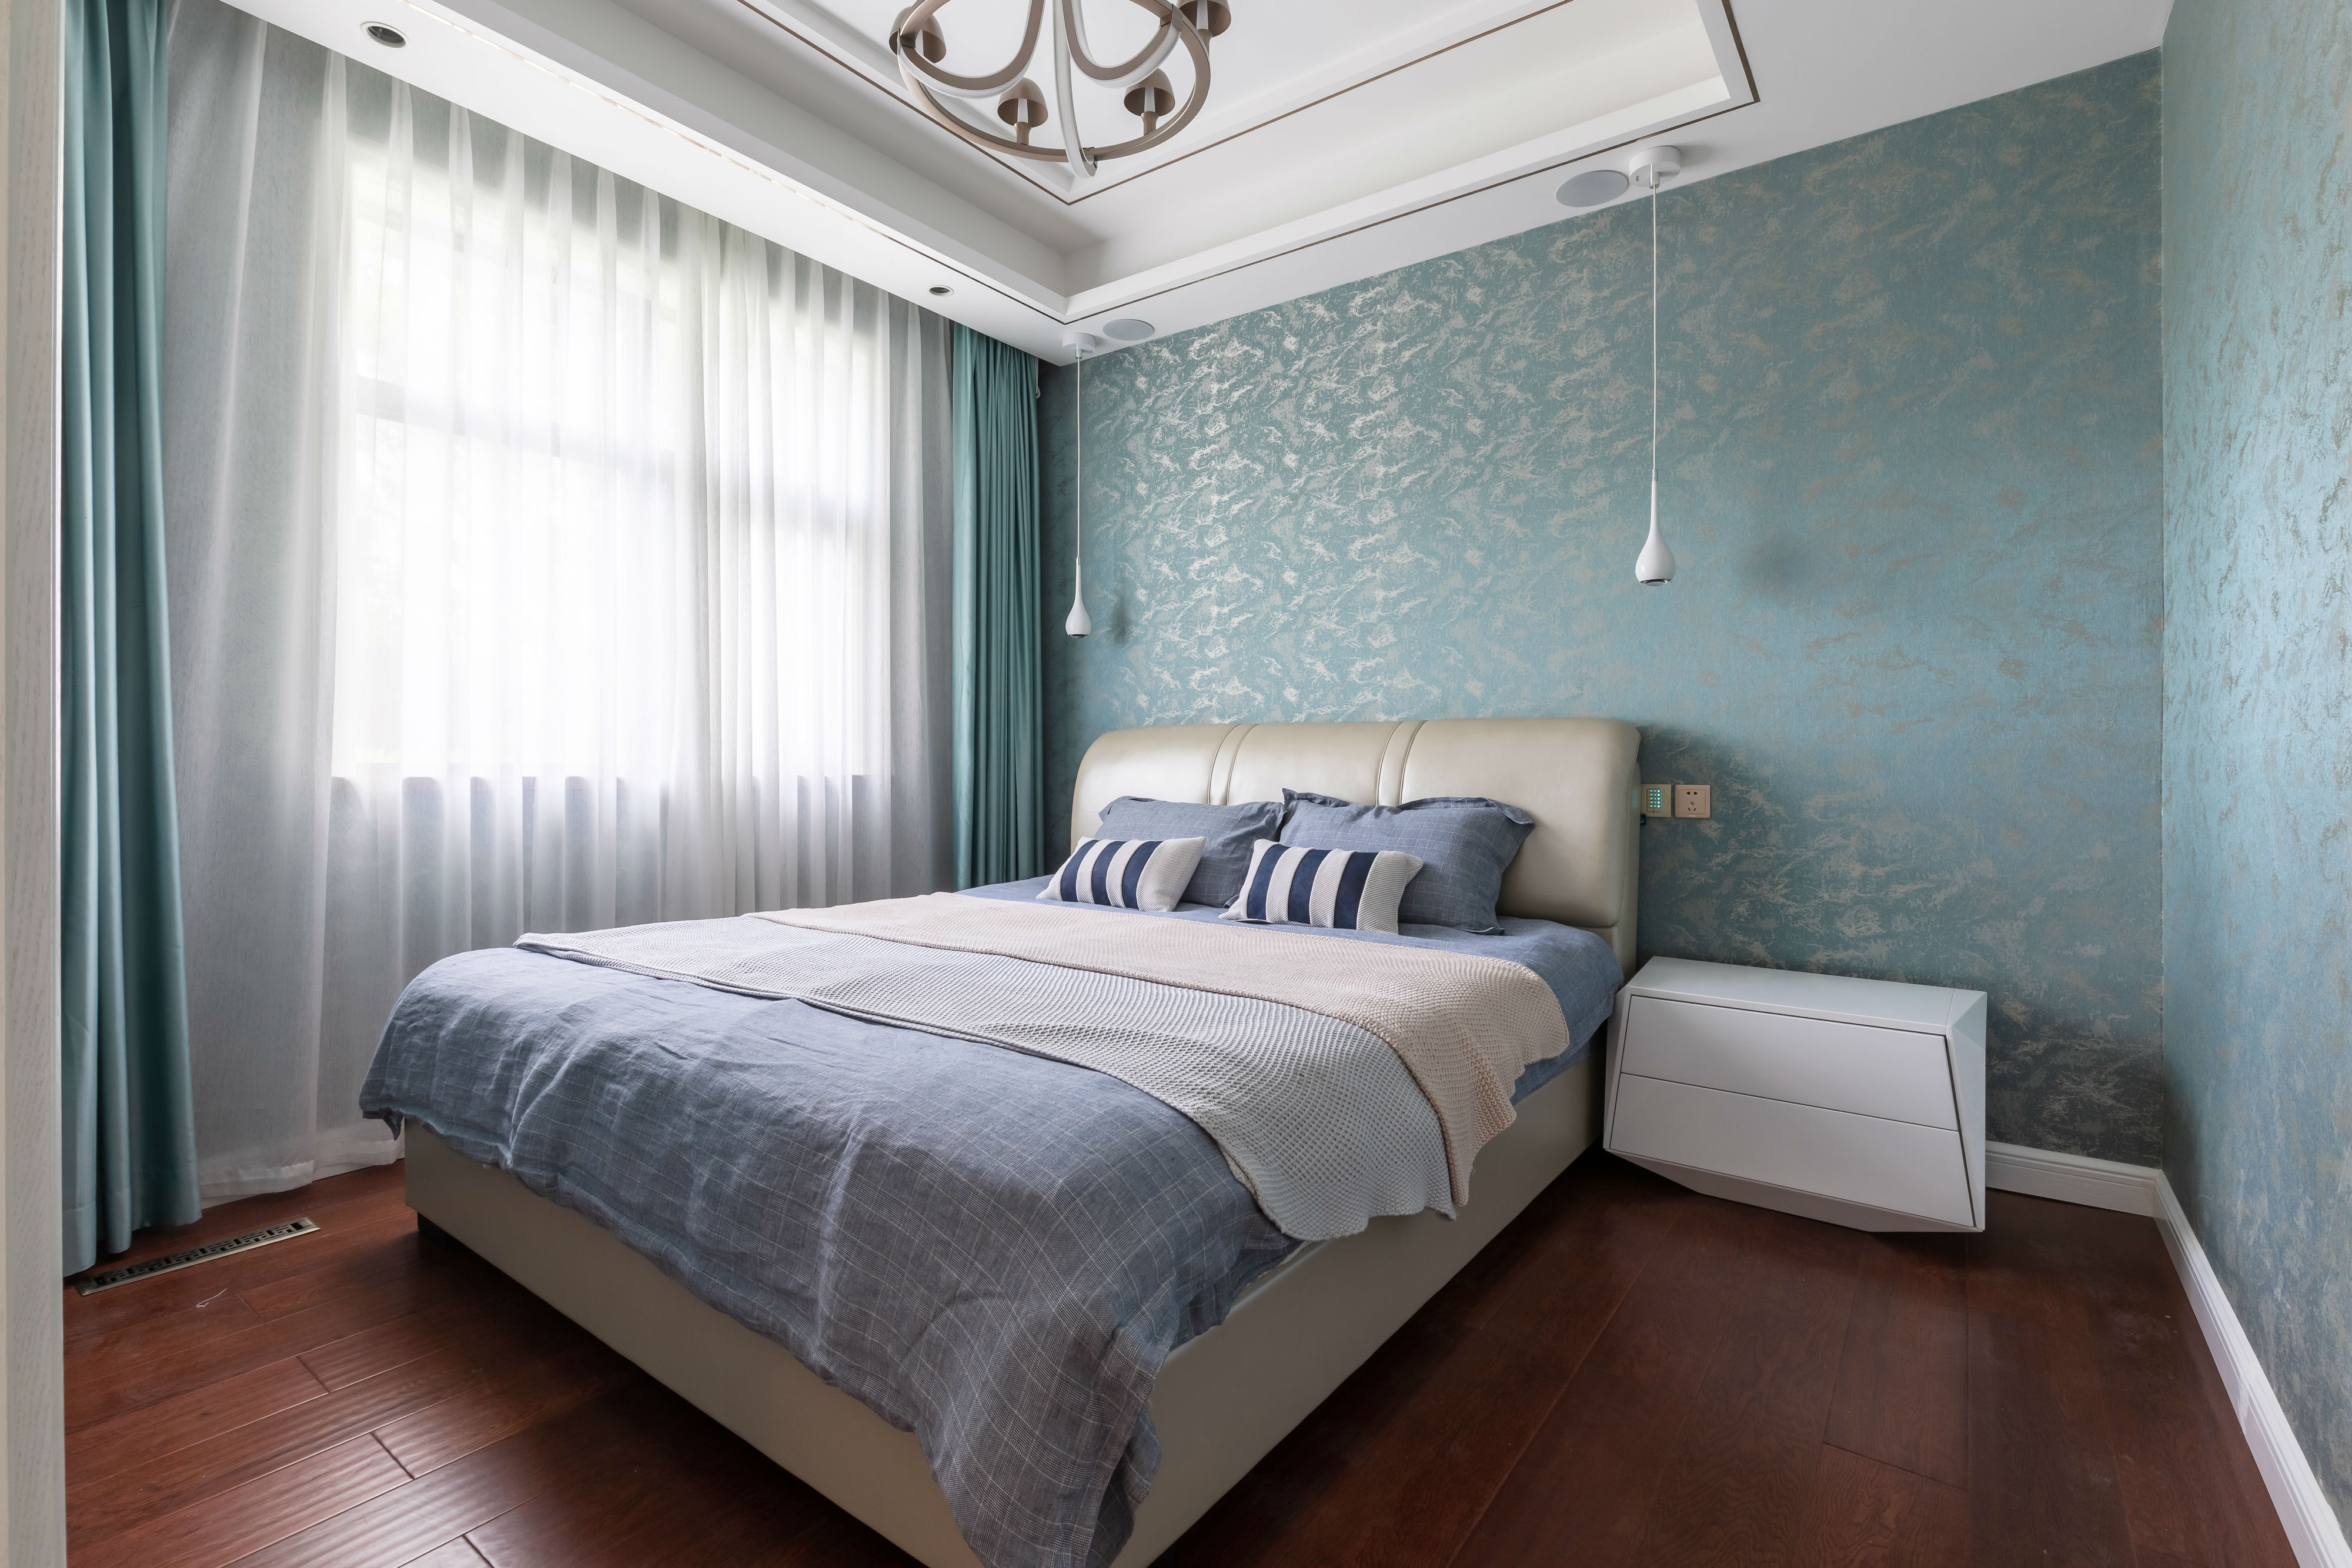 卧室窗帘3装修效果图精致70平混搭复式卧室装修美图混搭卧室设计图片赏析